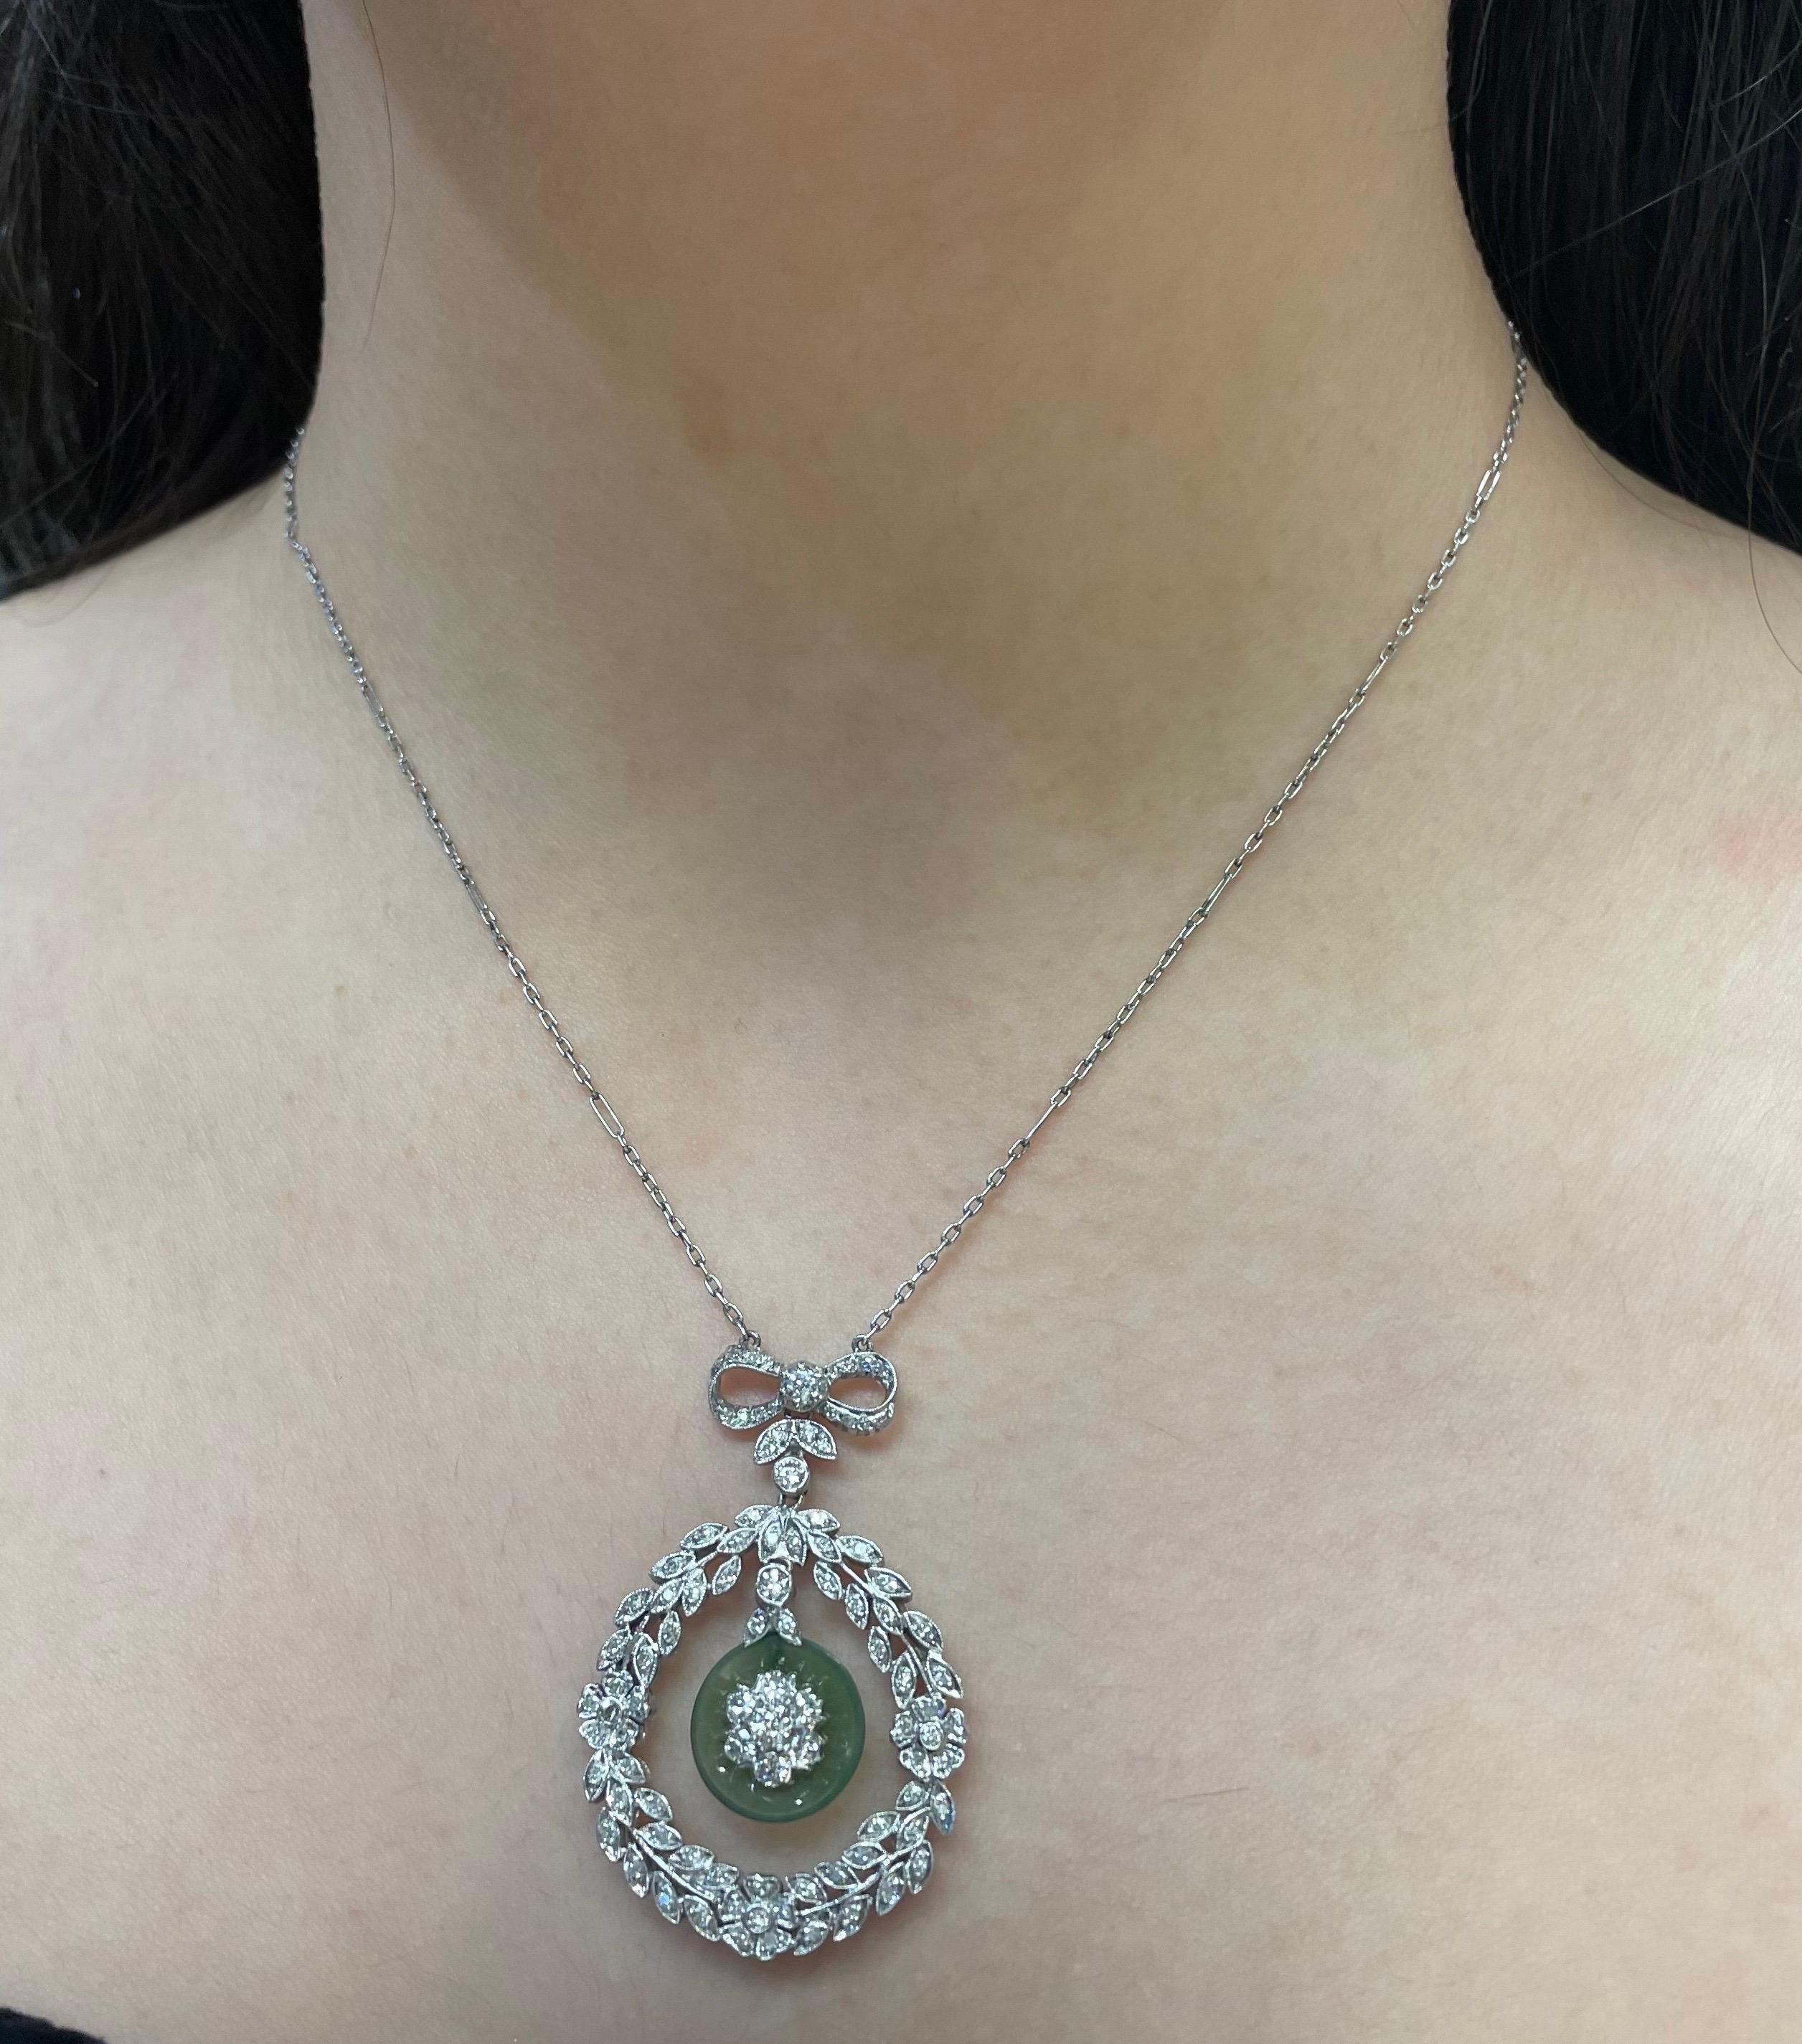 Collier à pendentifs en diamant et jade Art déco

Collier pendentif composé d'une couronne de diamants au centre, d'un jade pendant et d'un motif floral au milieu, le tout agrémenté d'un nœud sur le dessus. 

Longueur approximative de la chaîne :